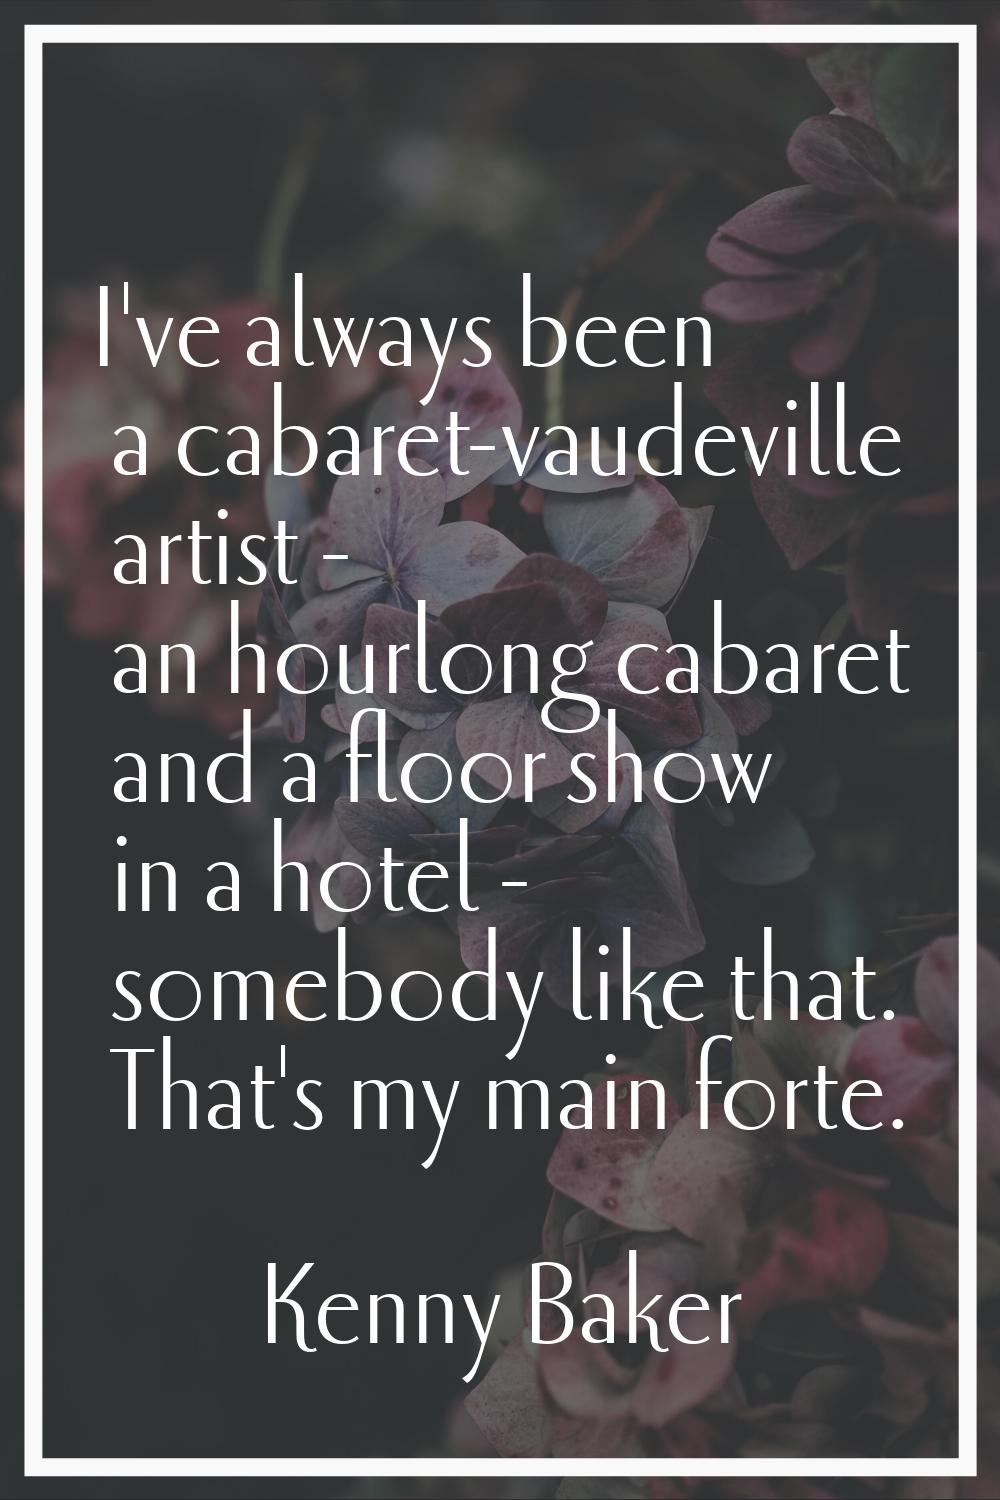 I've always been a cabaret-vaudeville artist - an hourlong cabaret and a floor show in a hotel - so